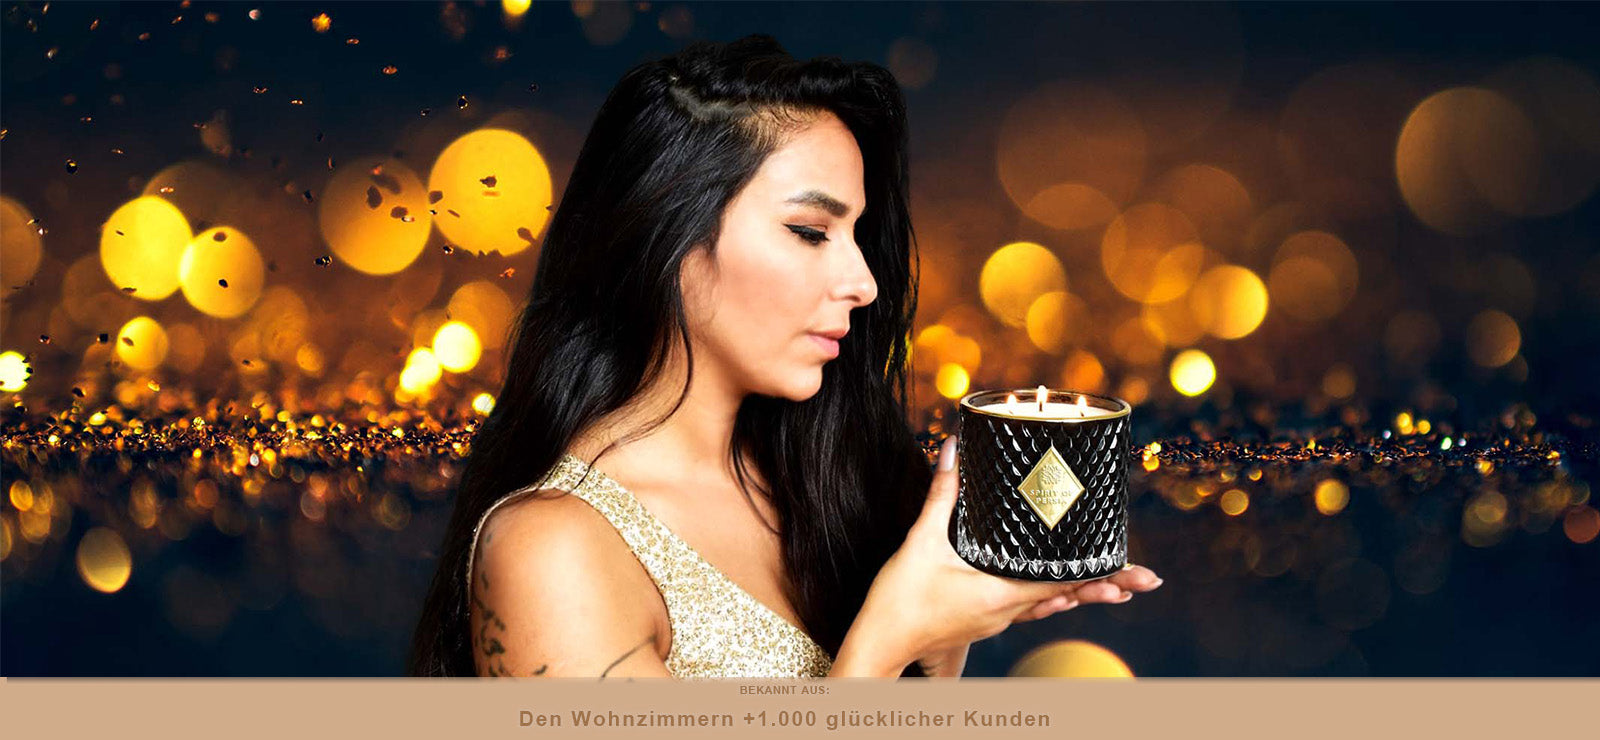 Gründerin Atussa hält eine schwarze orientalische Duftkerze in den Händen und genießt den wunderschönen Duft der Kerze.